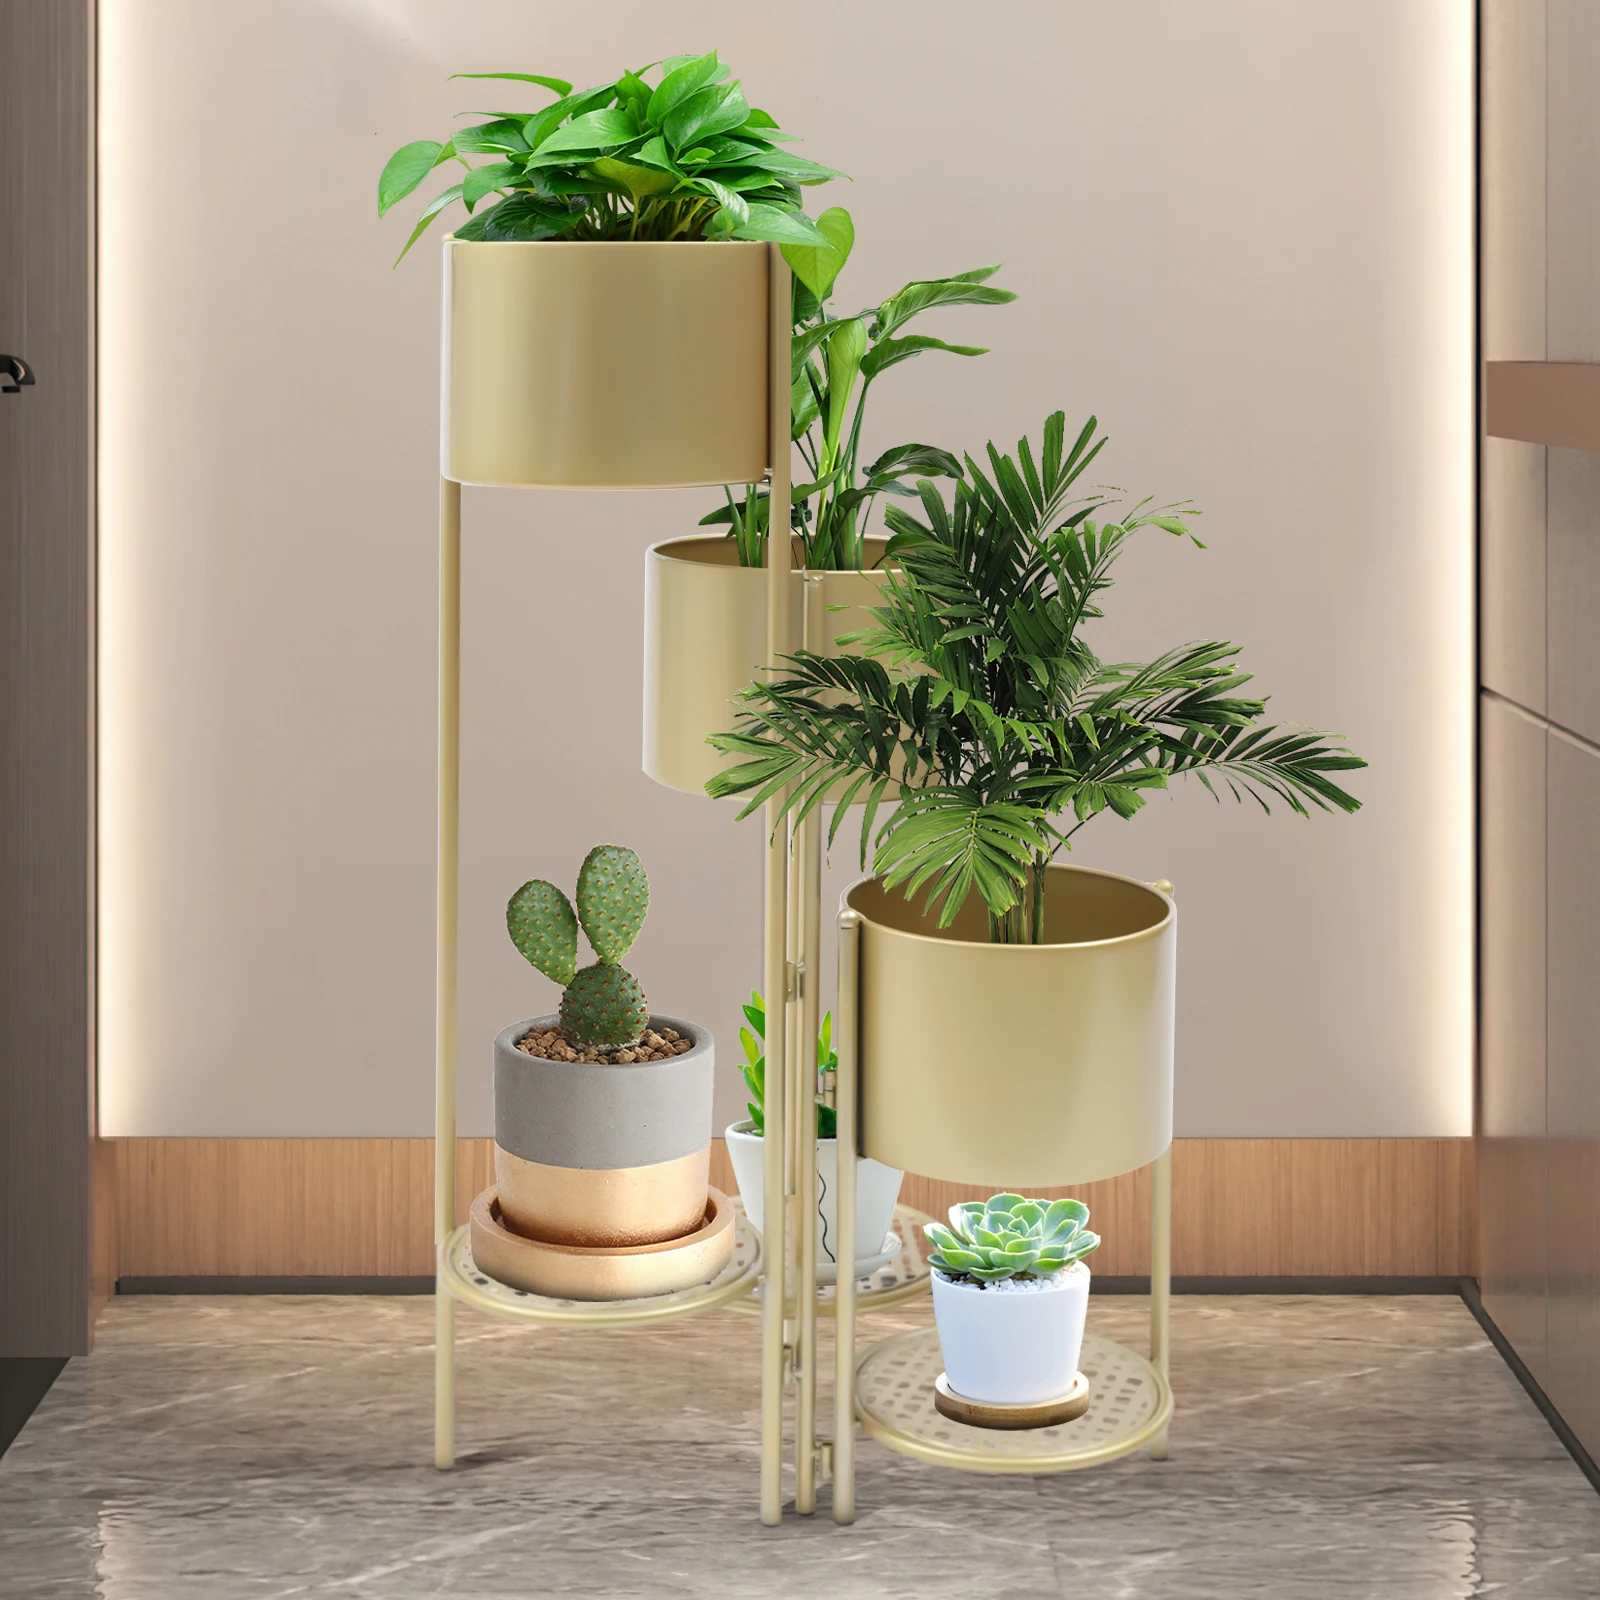 6 Tier Metal Plant Stand Flower Pot Rack Corner Shelving Indoor/Outdoor Decorative Display Rack For Patio Garden Living Room